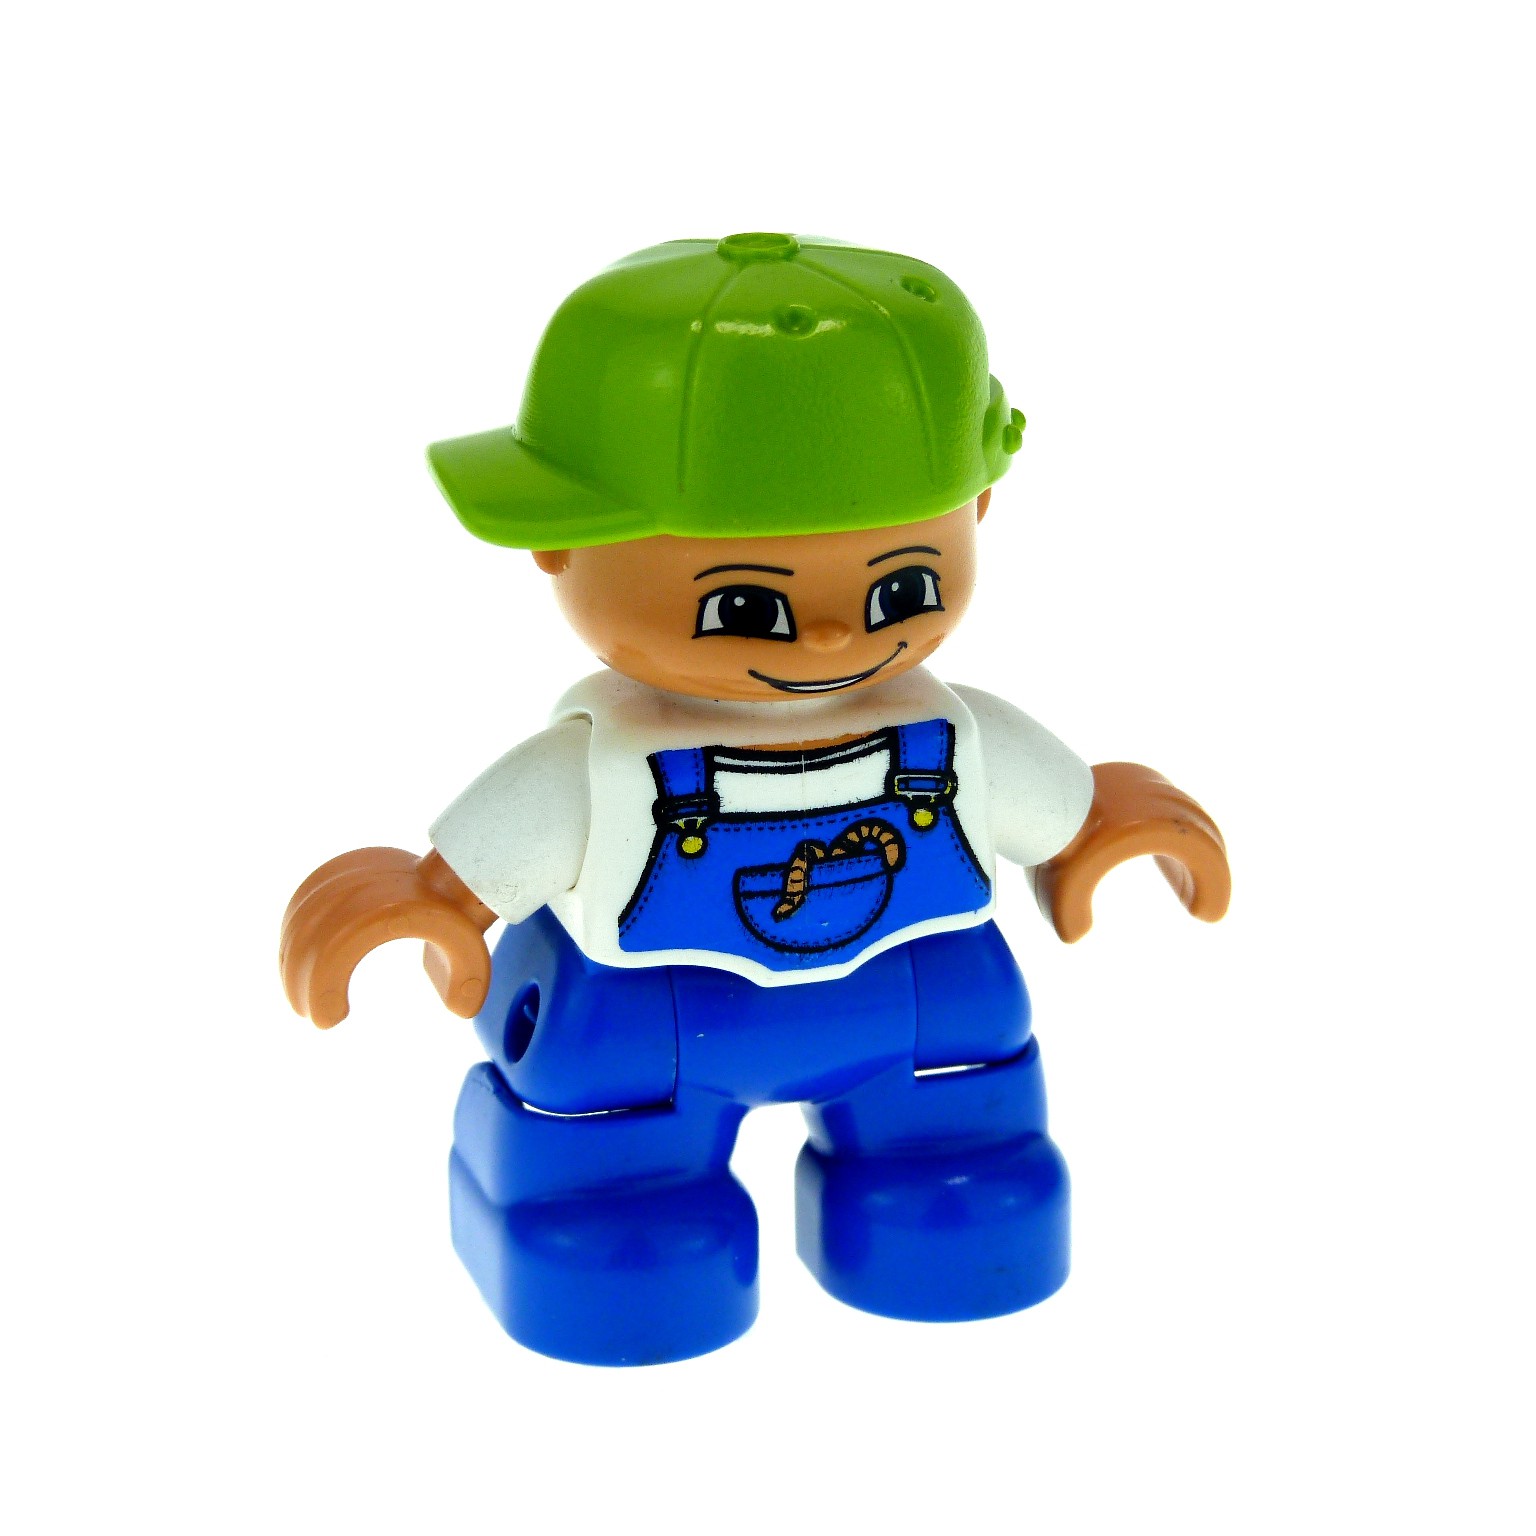 neues Modell Figur Lego Duplo grün blau braune Haare Mann 